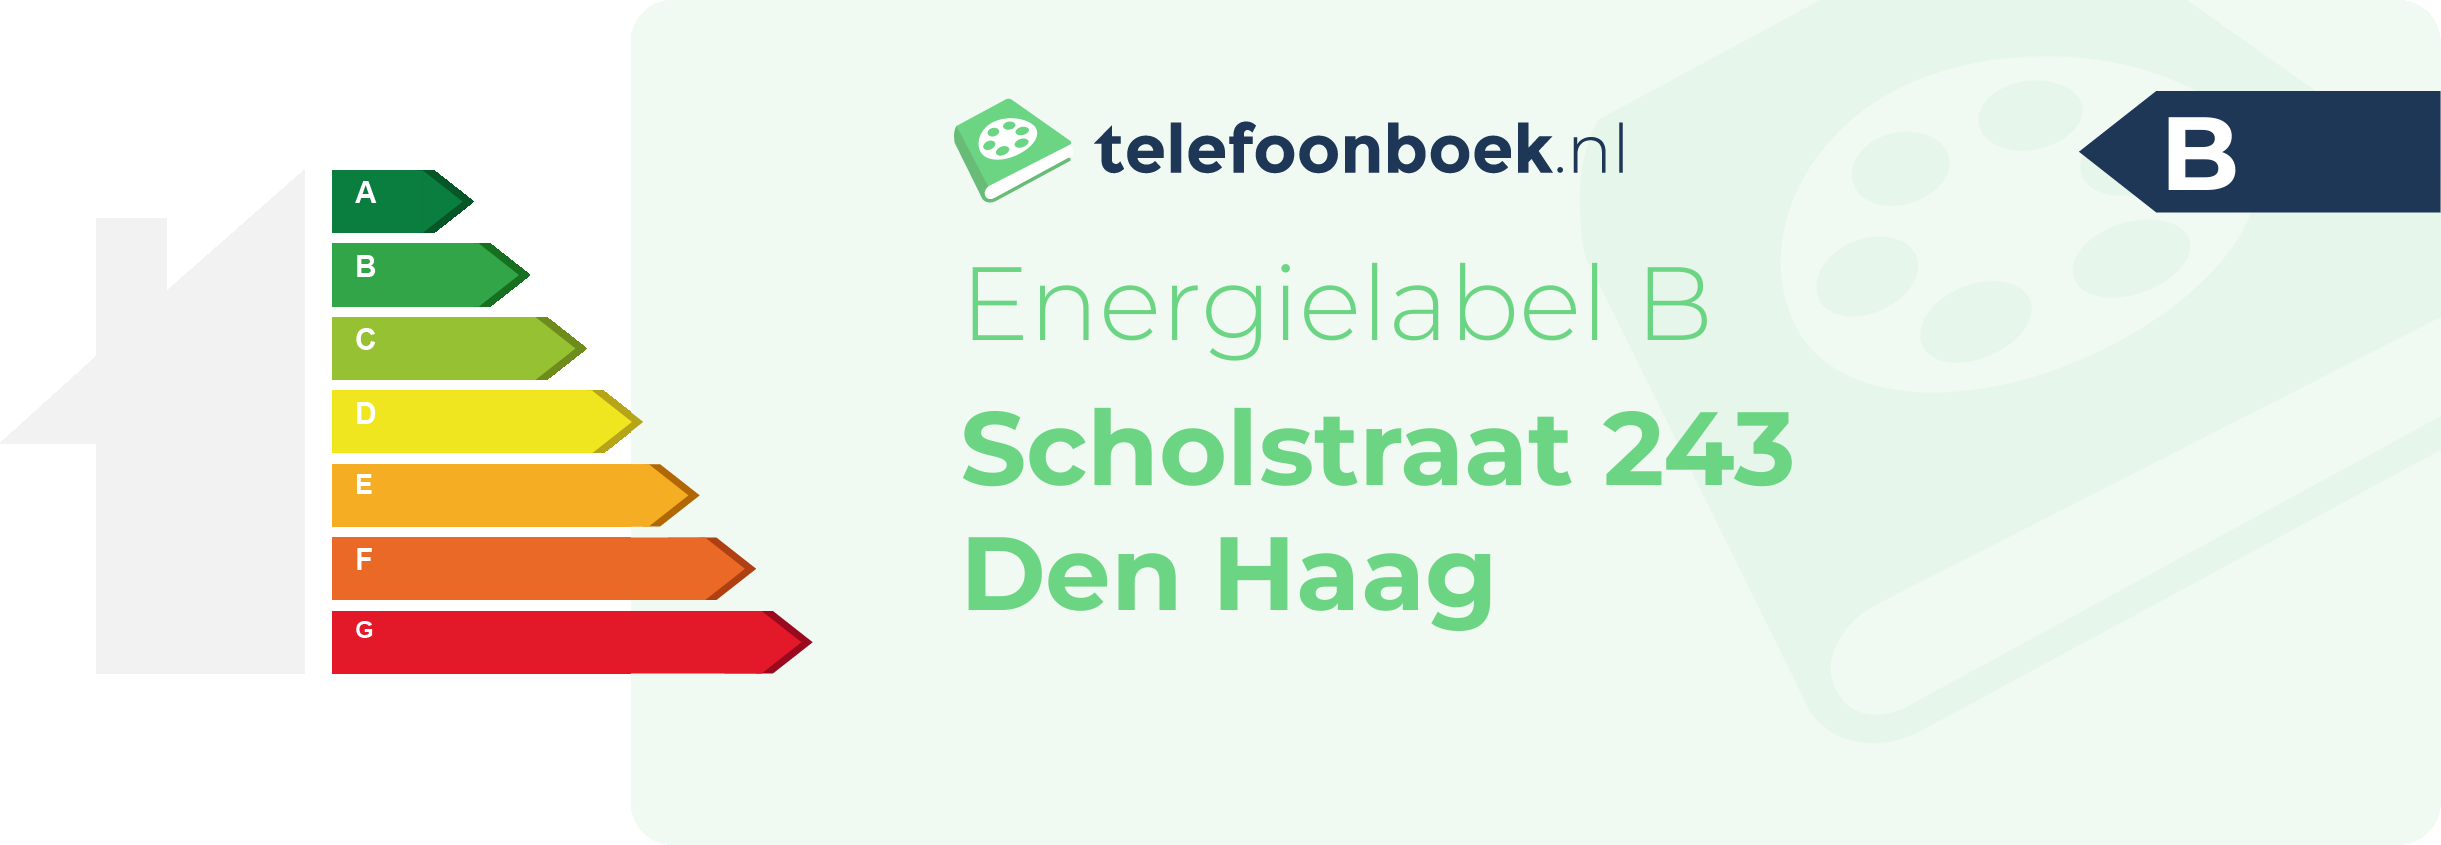 Energielabel Scholstraat 243 Den Haag